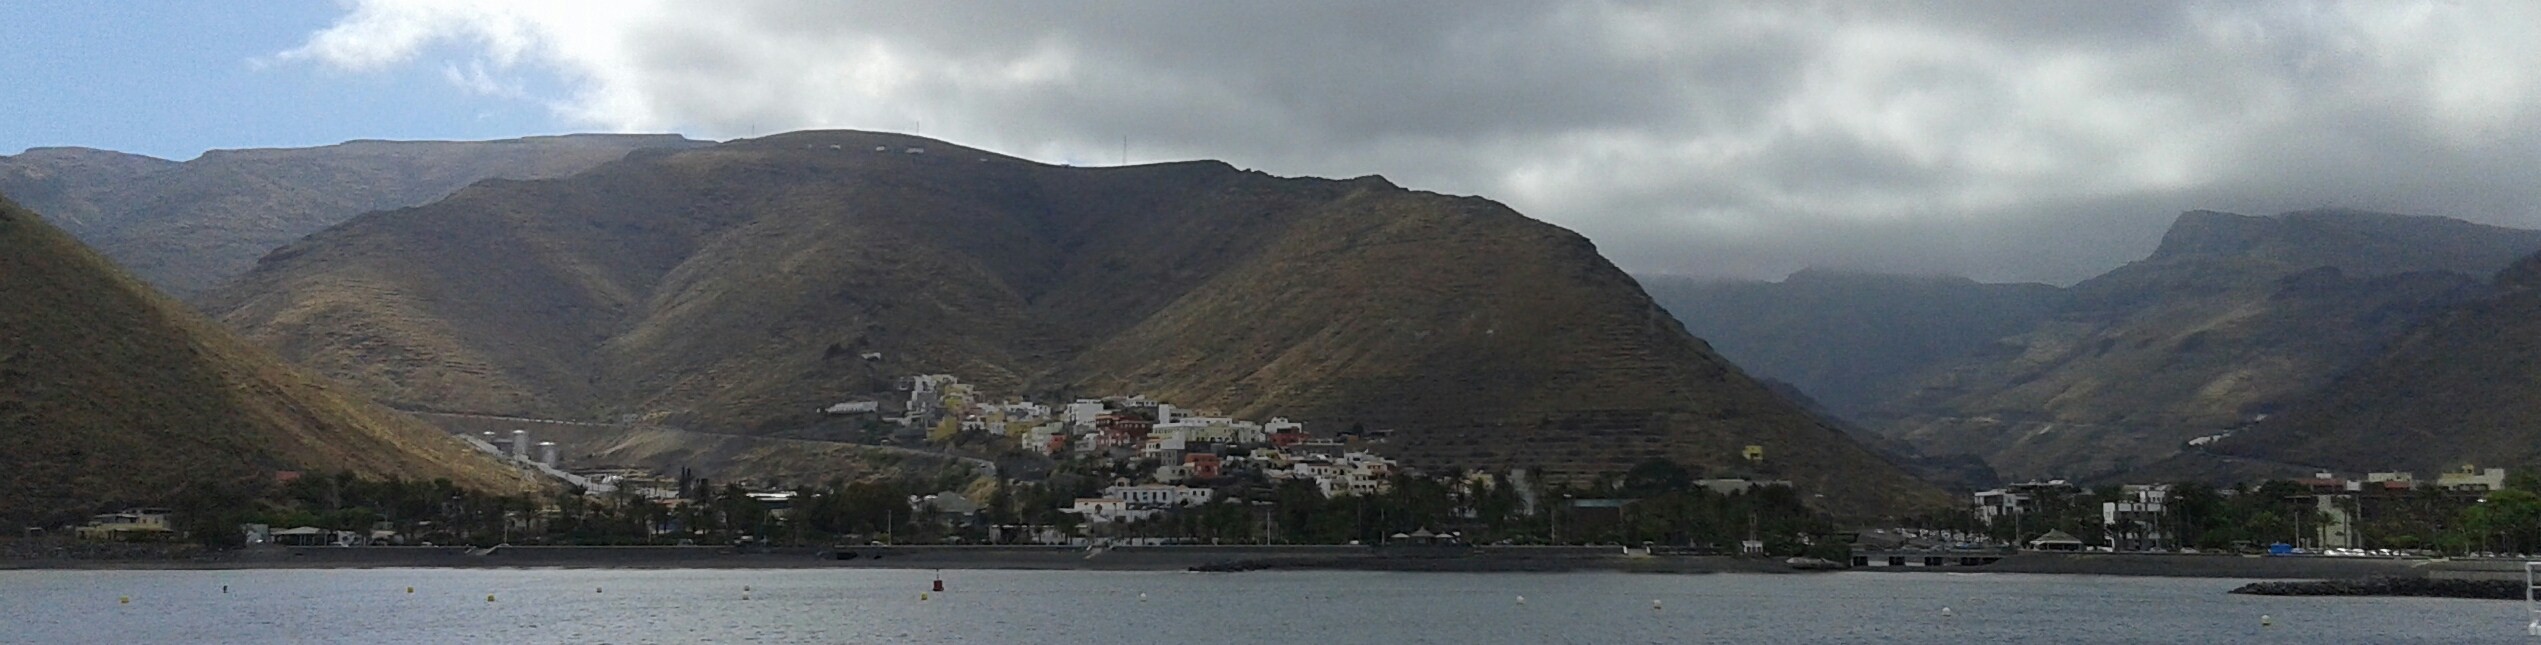 San Sebastian La Gomera